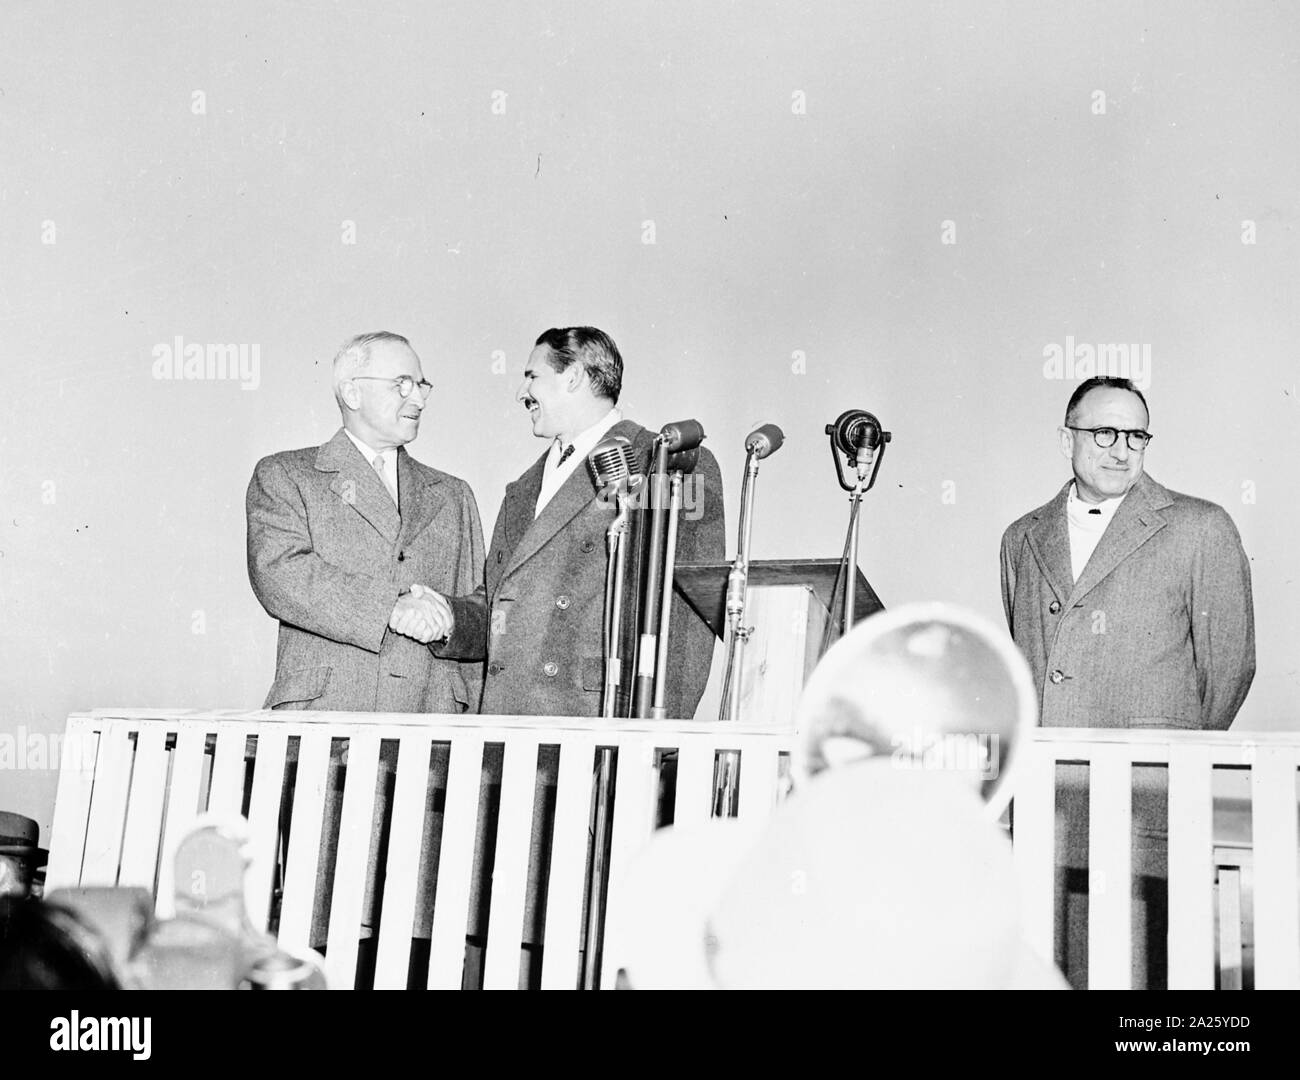 Fotografia del Presidente Truman stringe la mano al Presidente Prio Socarras di Cuba nel corso di una cerimonia presso l'Aeroporto Nazionale di Washington, D. C. All'arrivo del Presidente Socarras per una visita. Foto Stock